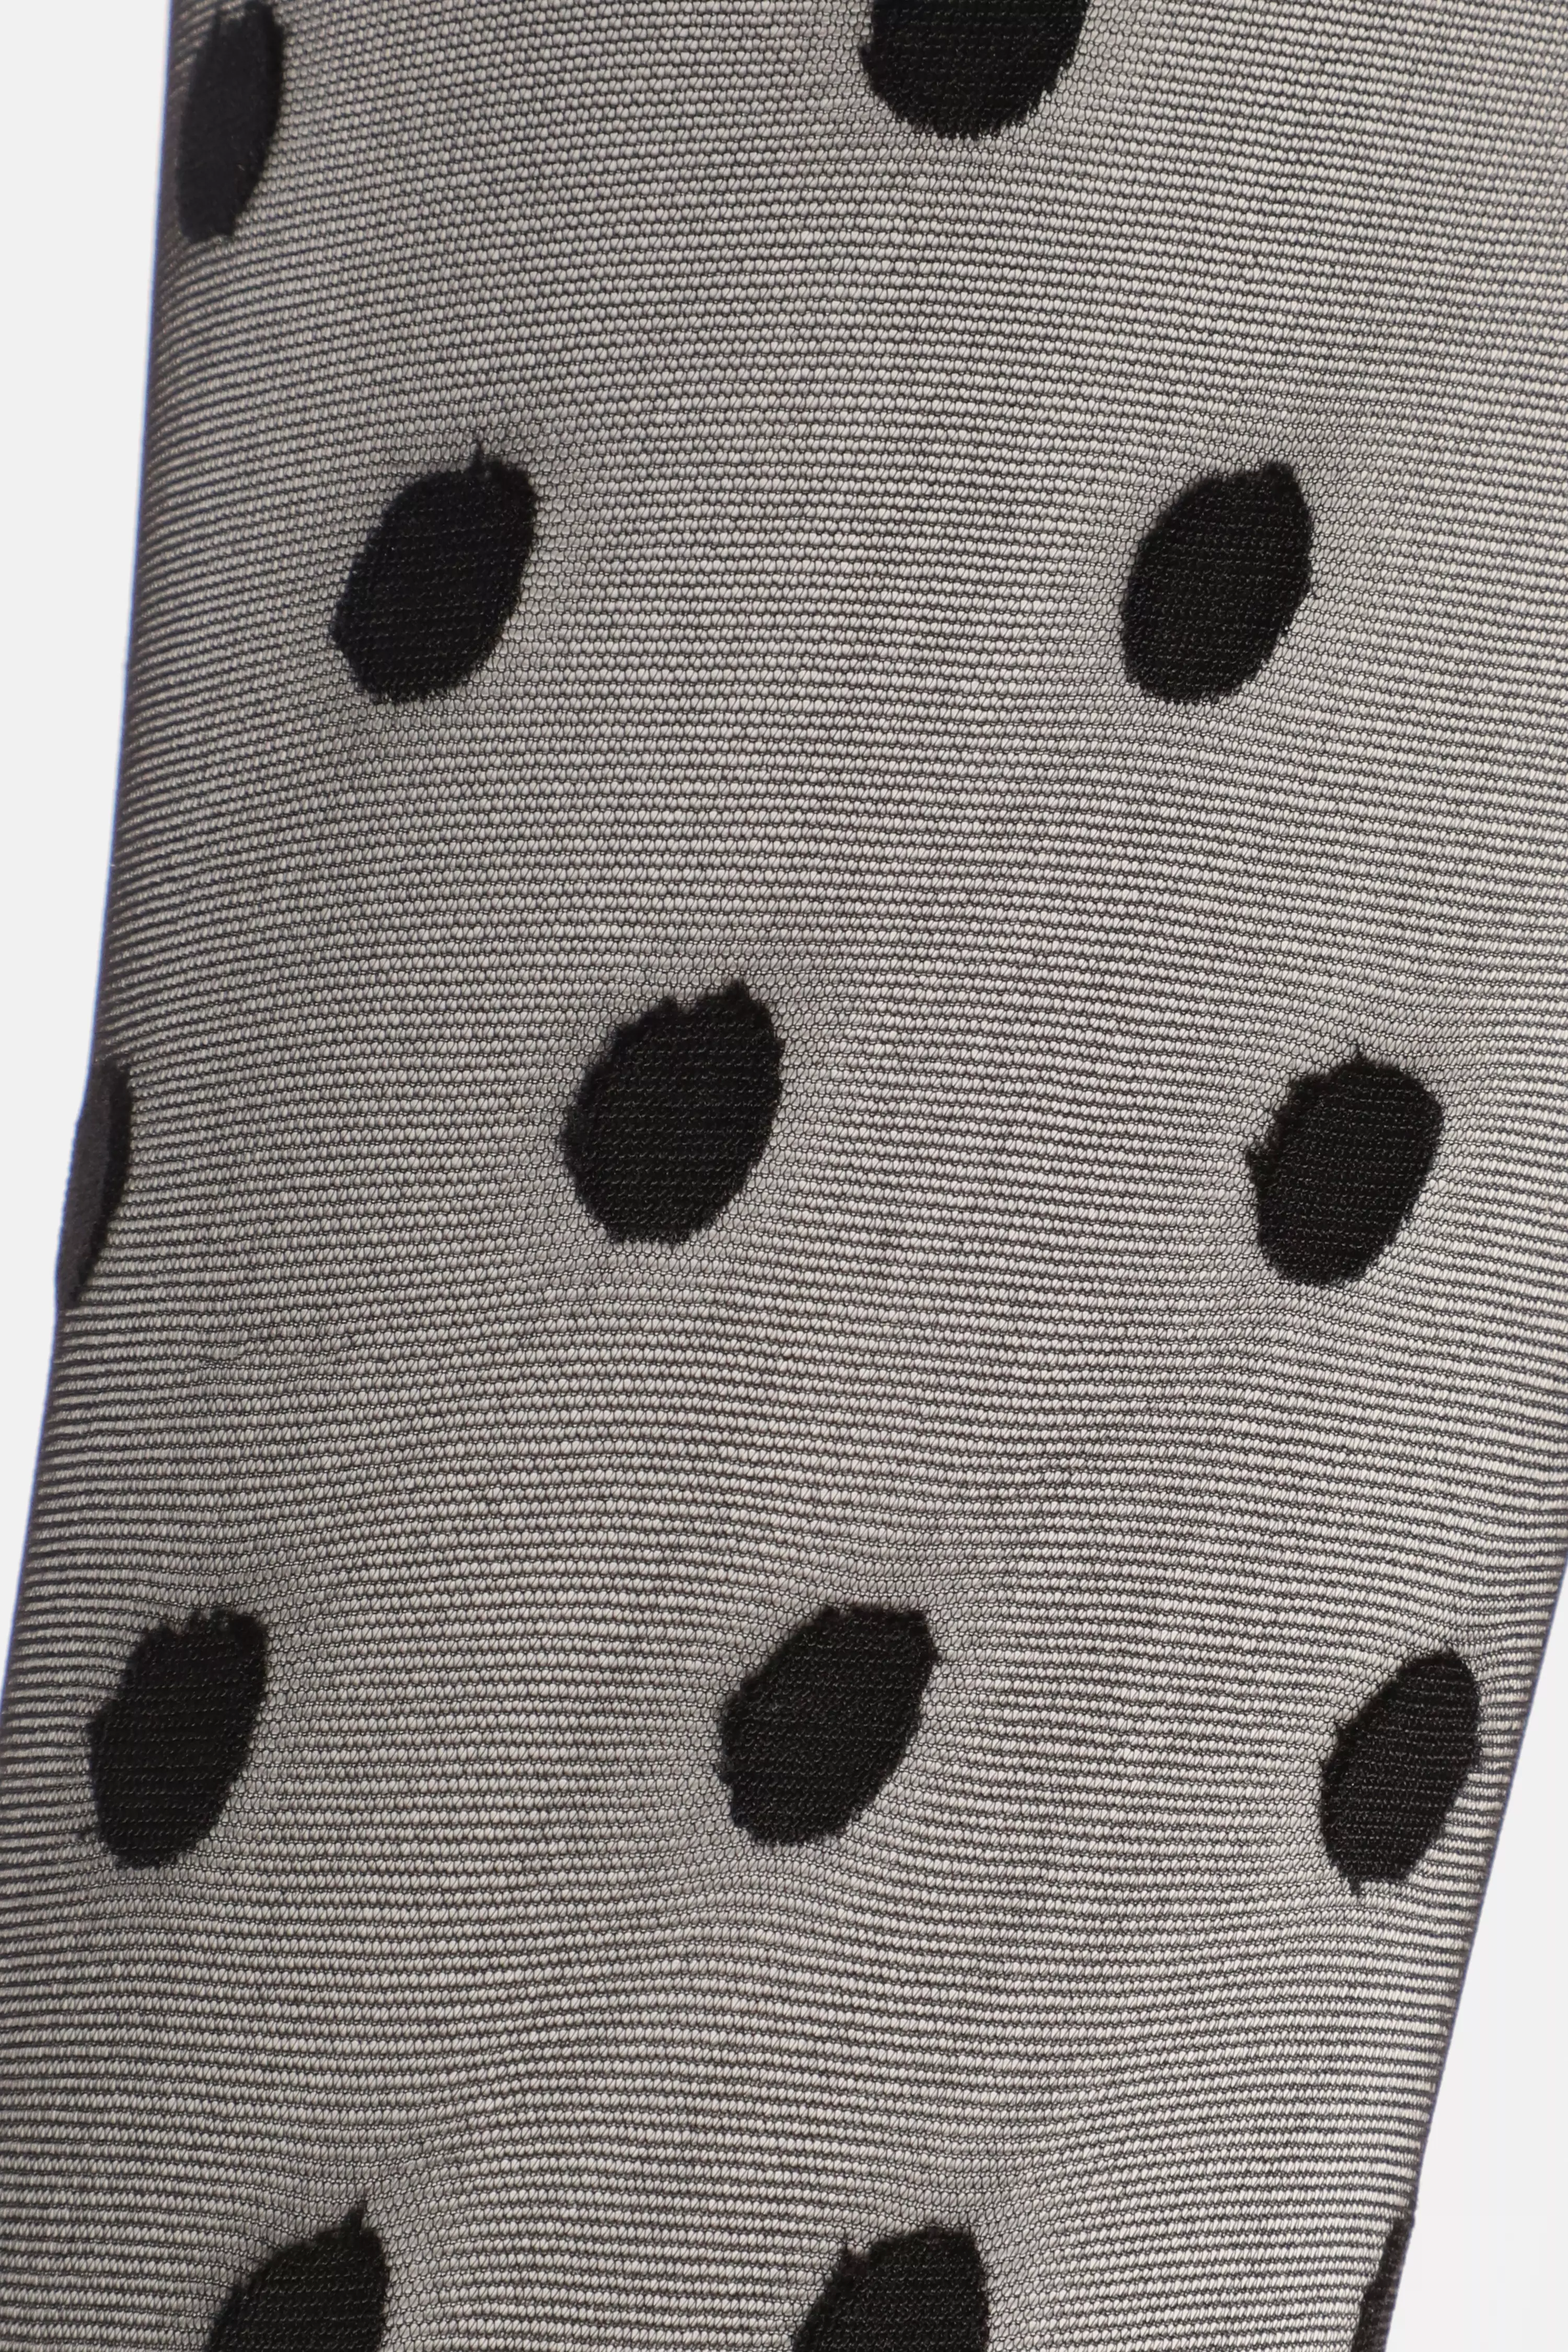 Black Polka Dot Sheer Tights - QUIZ Clothing